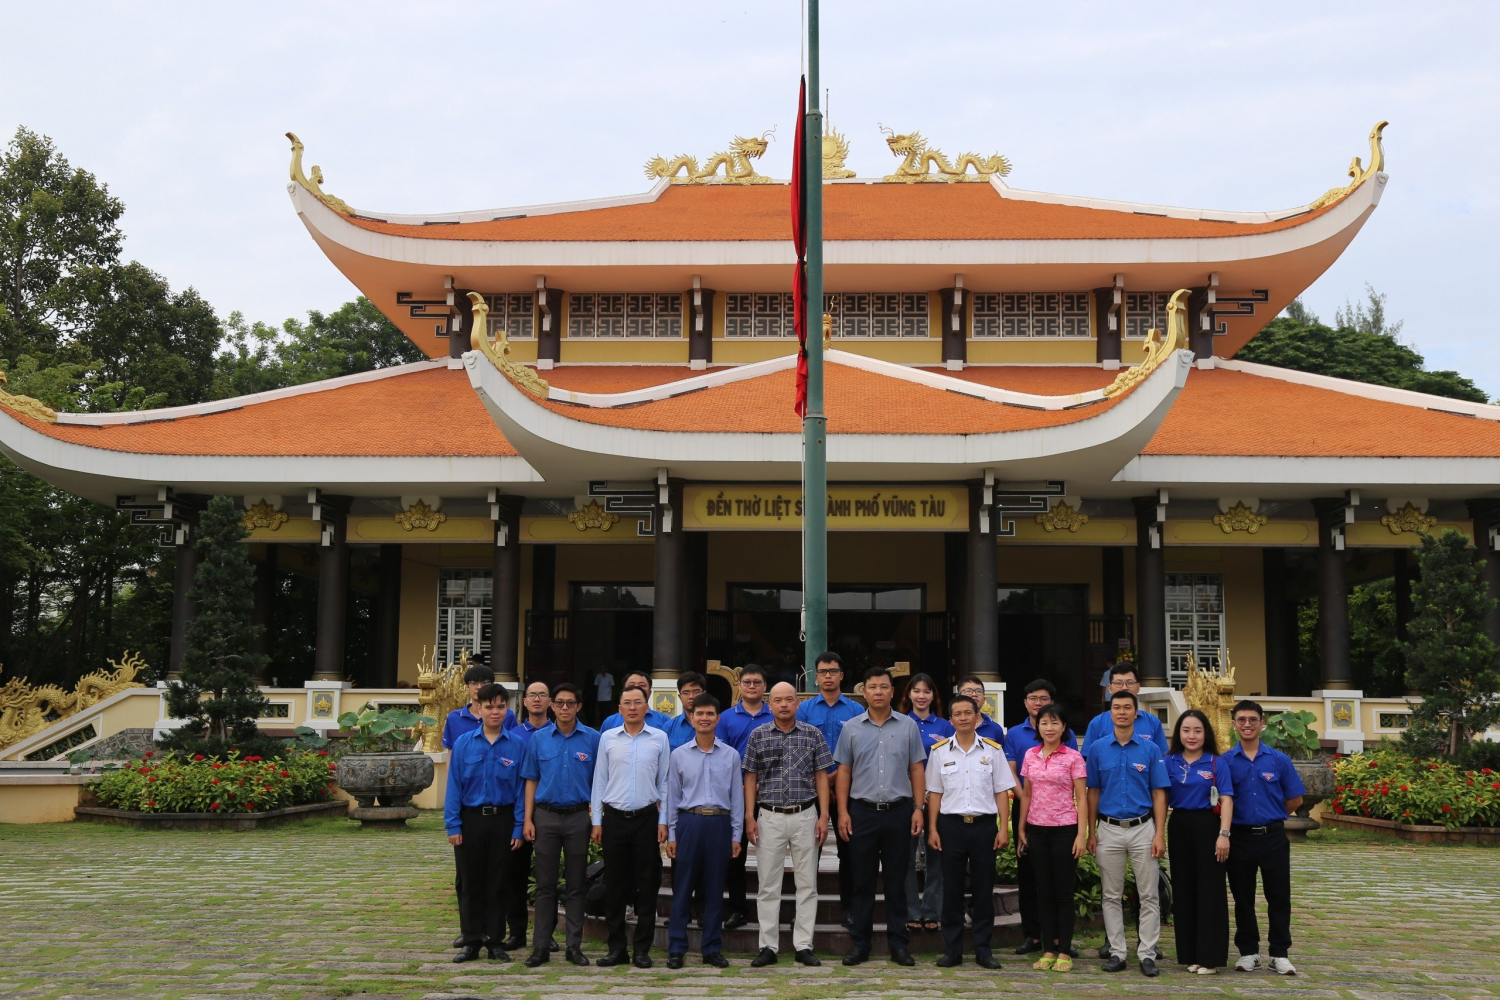 Đoàn chụp hình lưu niệm trước Đền thờ Liệt sĩ thành phố Vũng Tàu